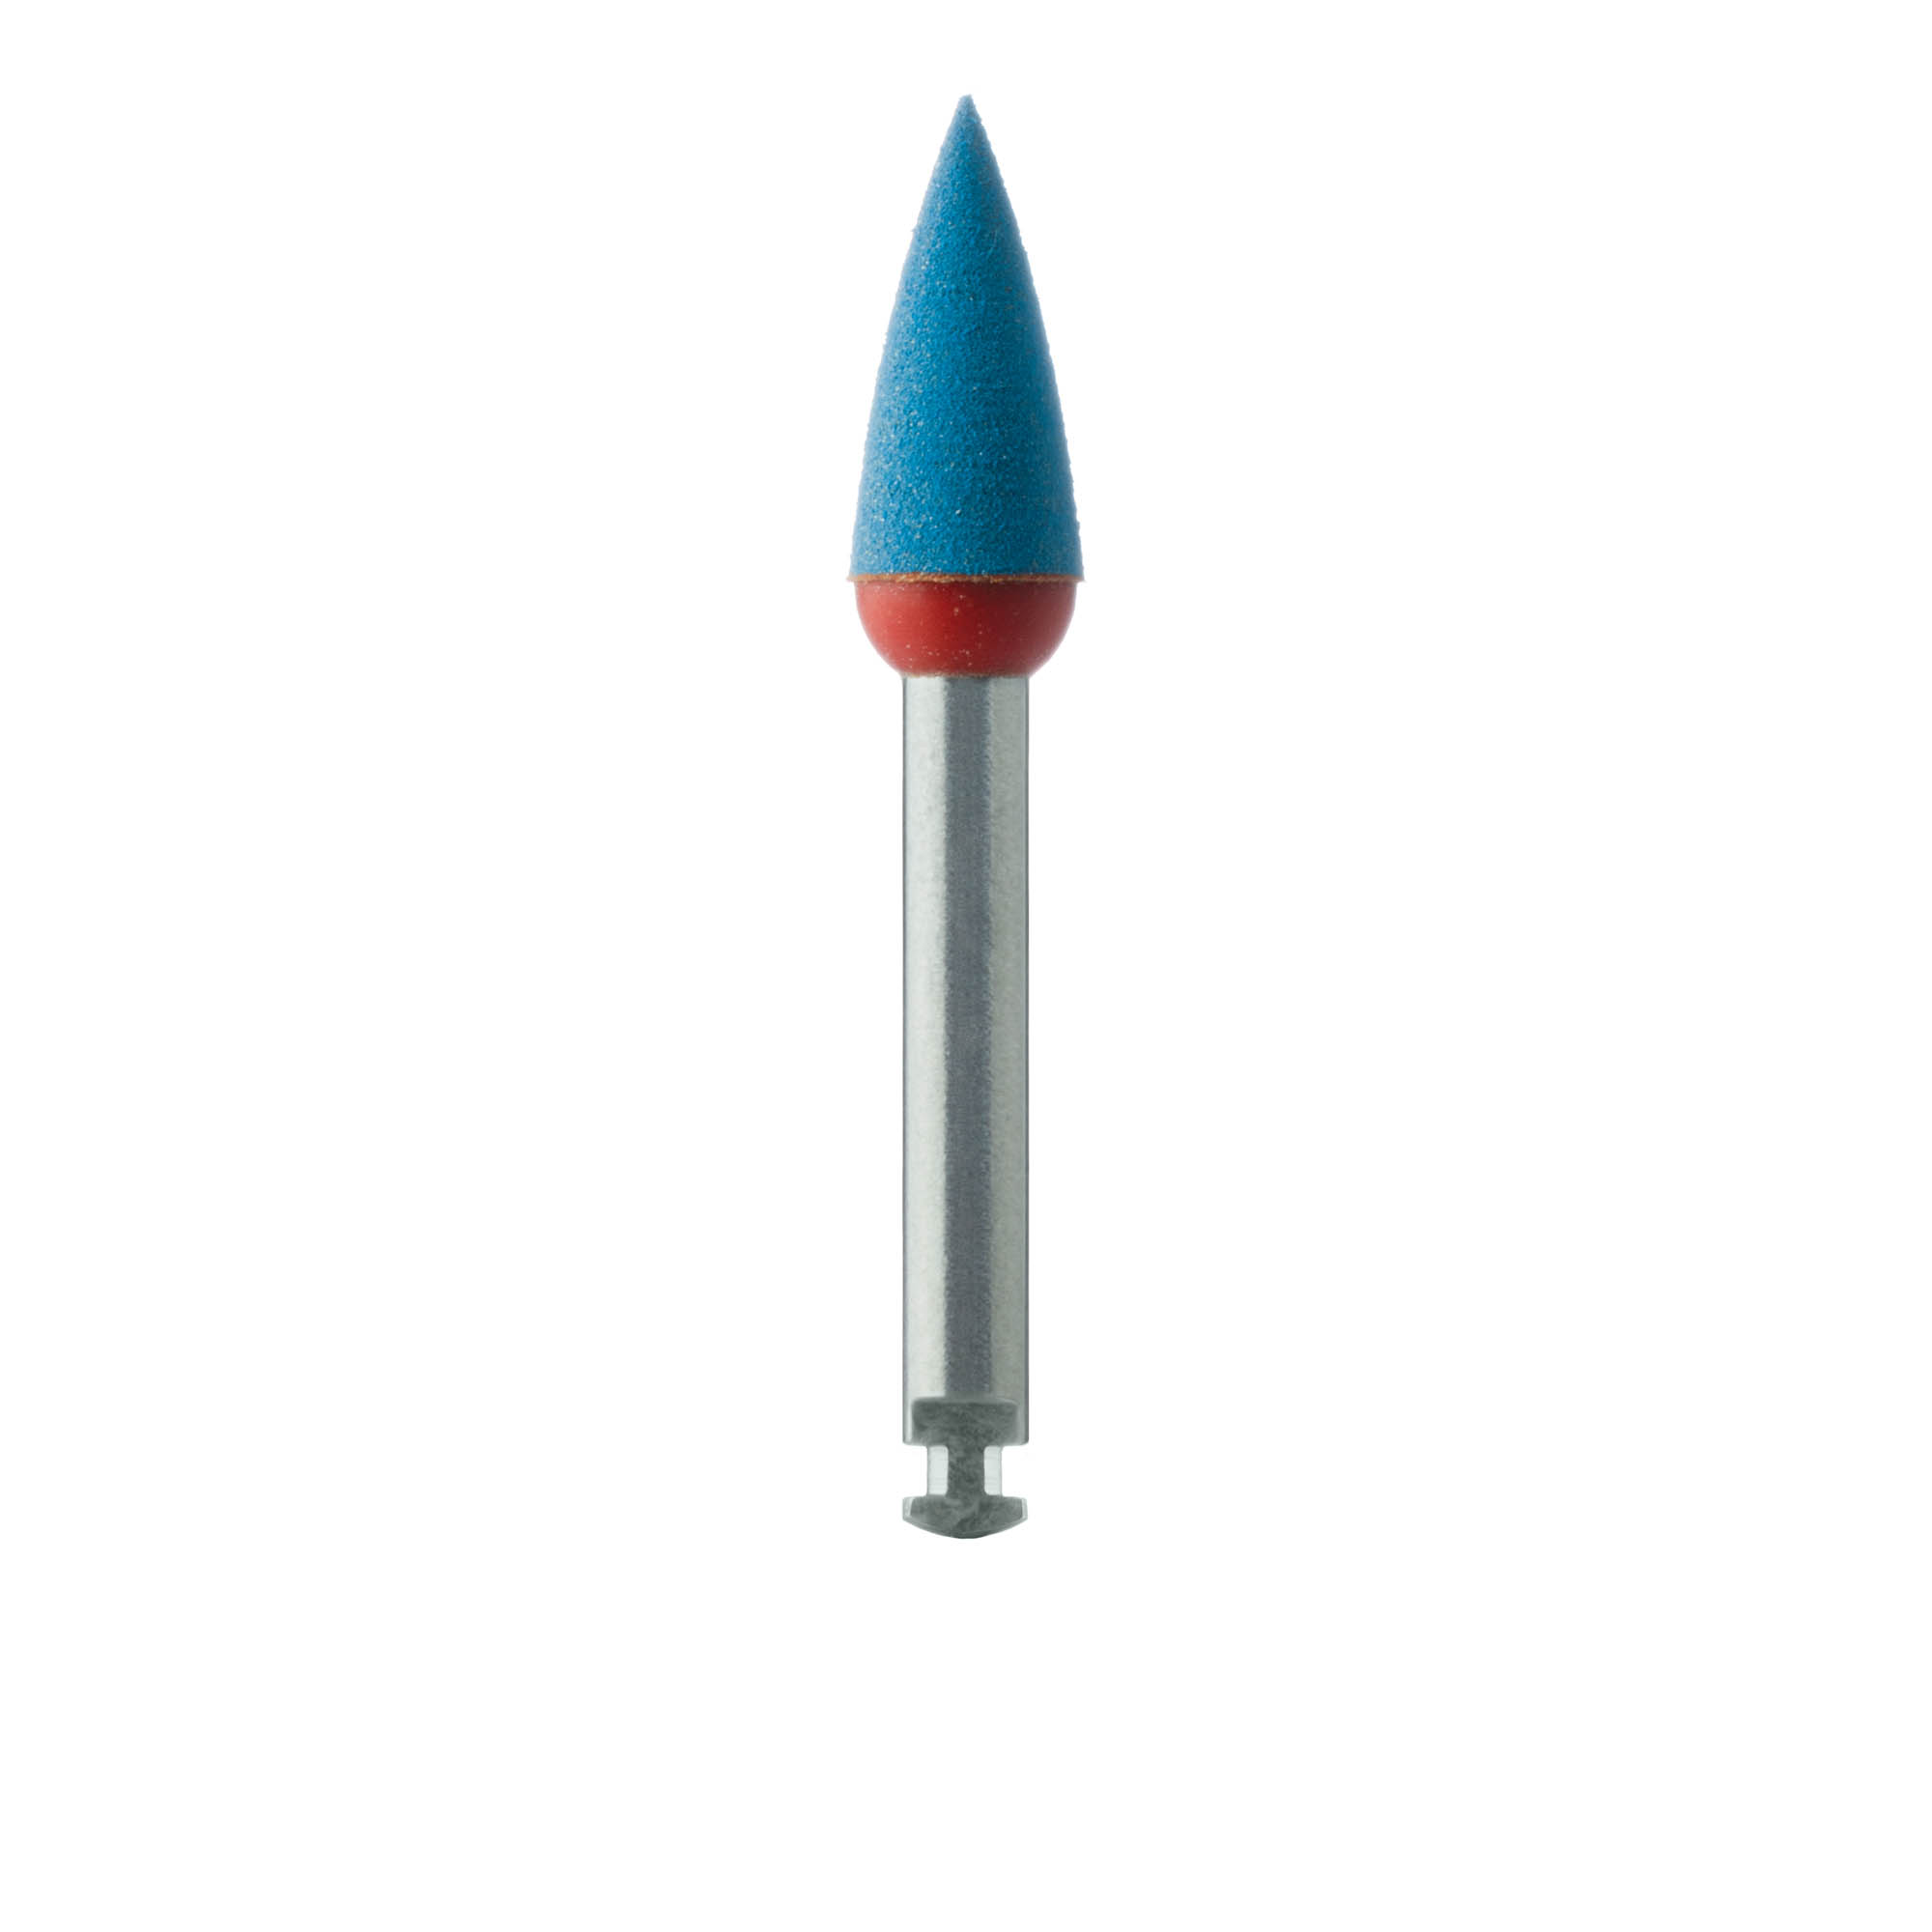 DCA04-040-RA-BL / O Polisher, Diamond Impregnated Polishing for Zirconia, Blue / Orange, Smoothing, Point, 4.0mm, RA